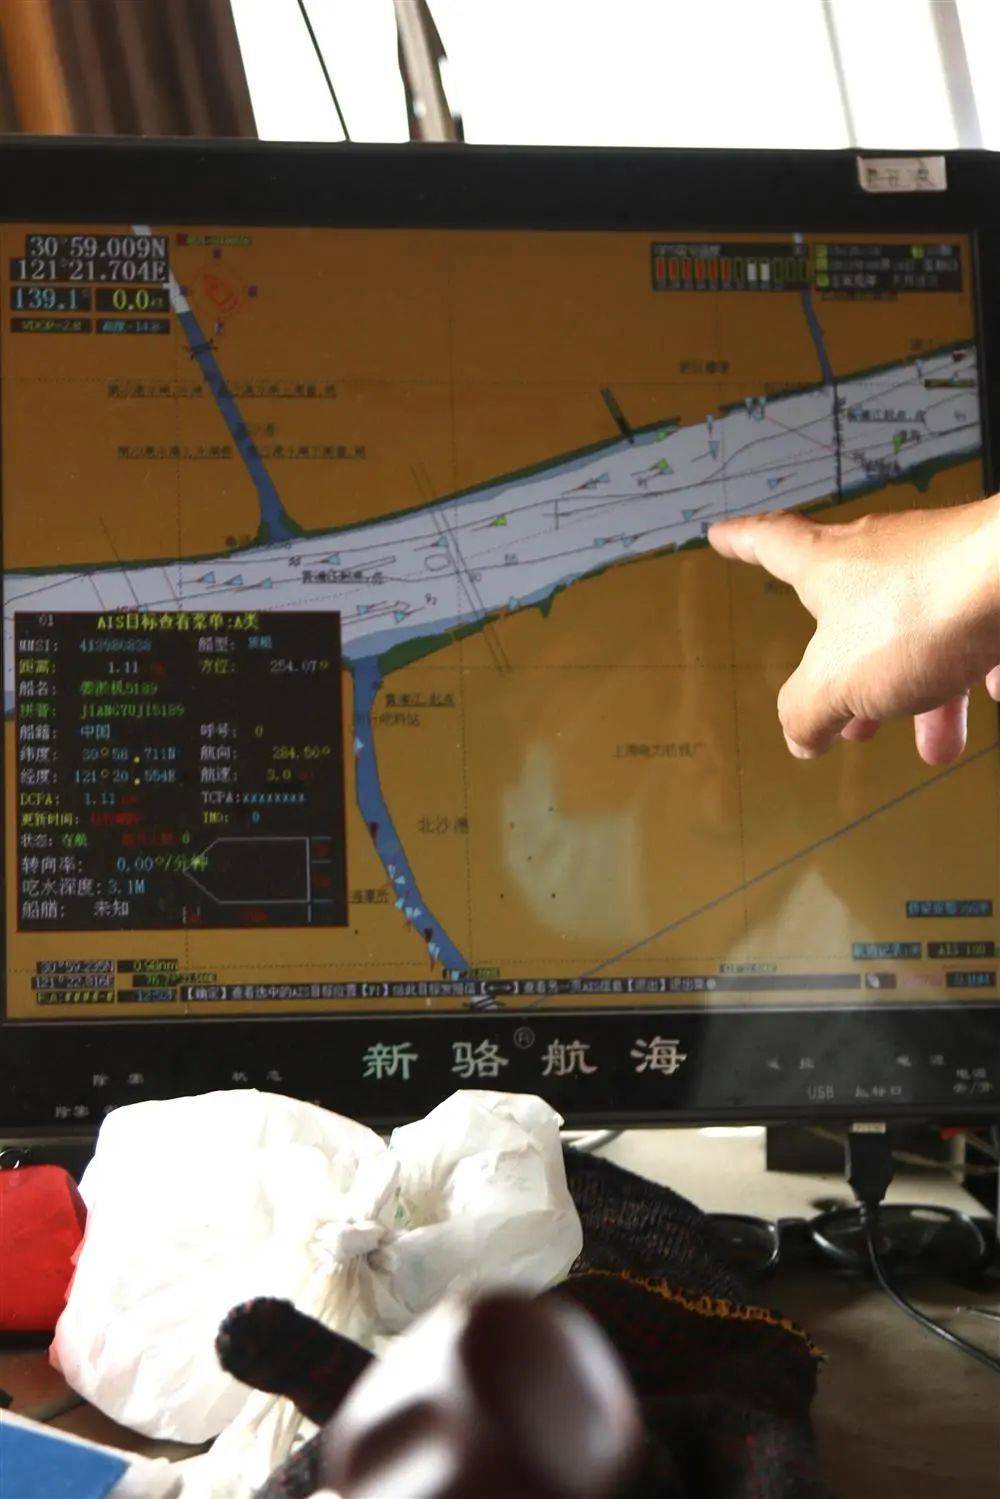 许多船已经装有智能化的GPS系统。冯蕊 摄